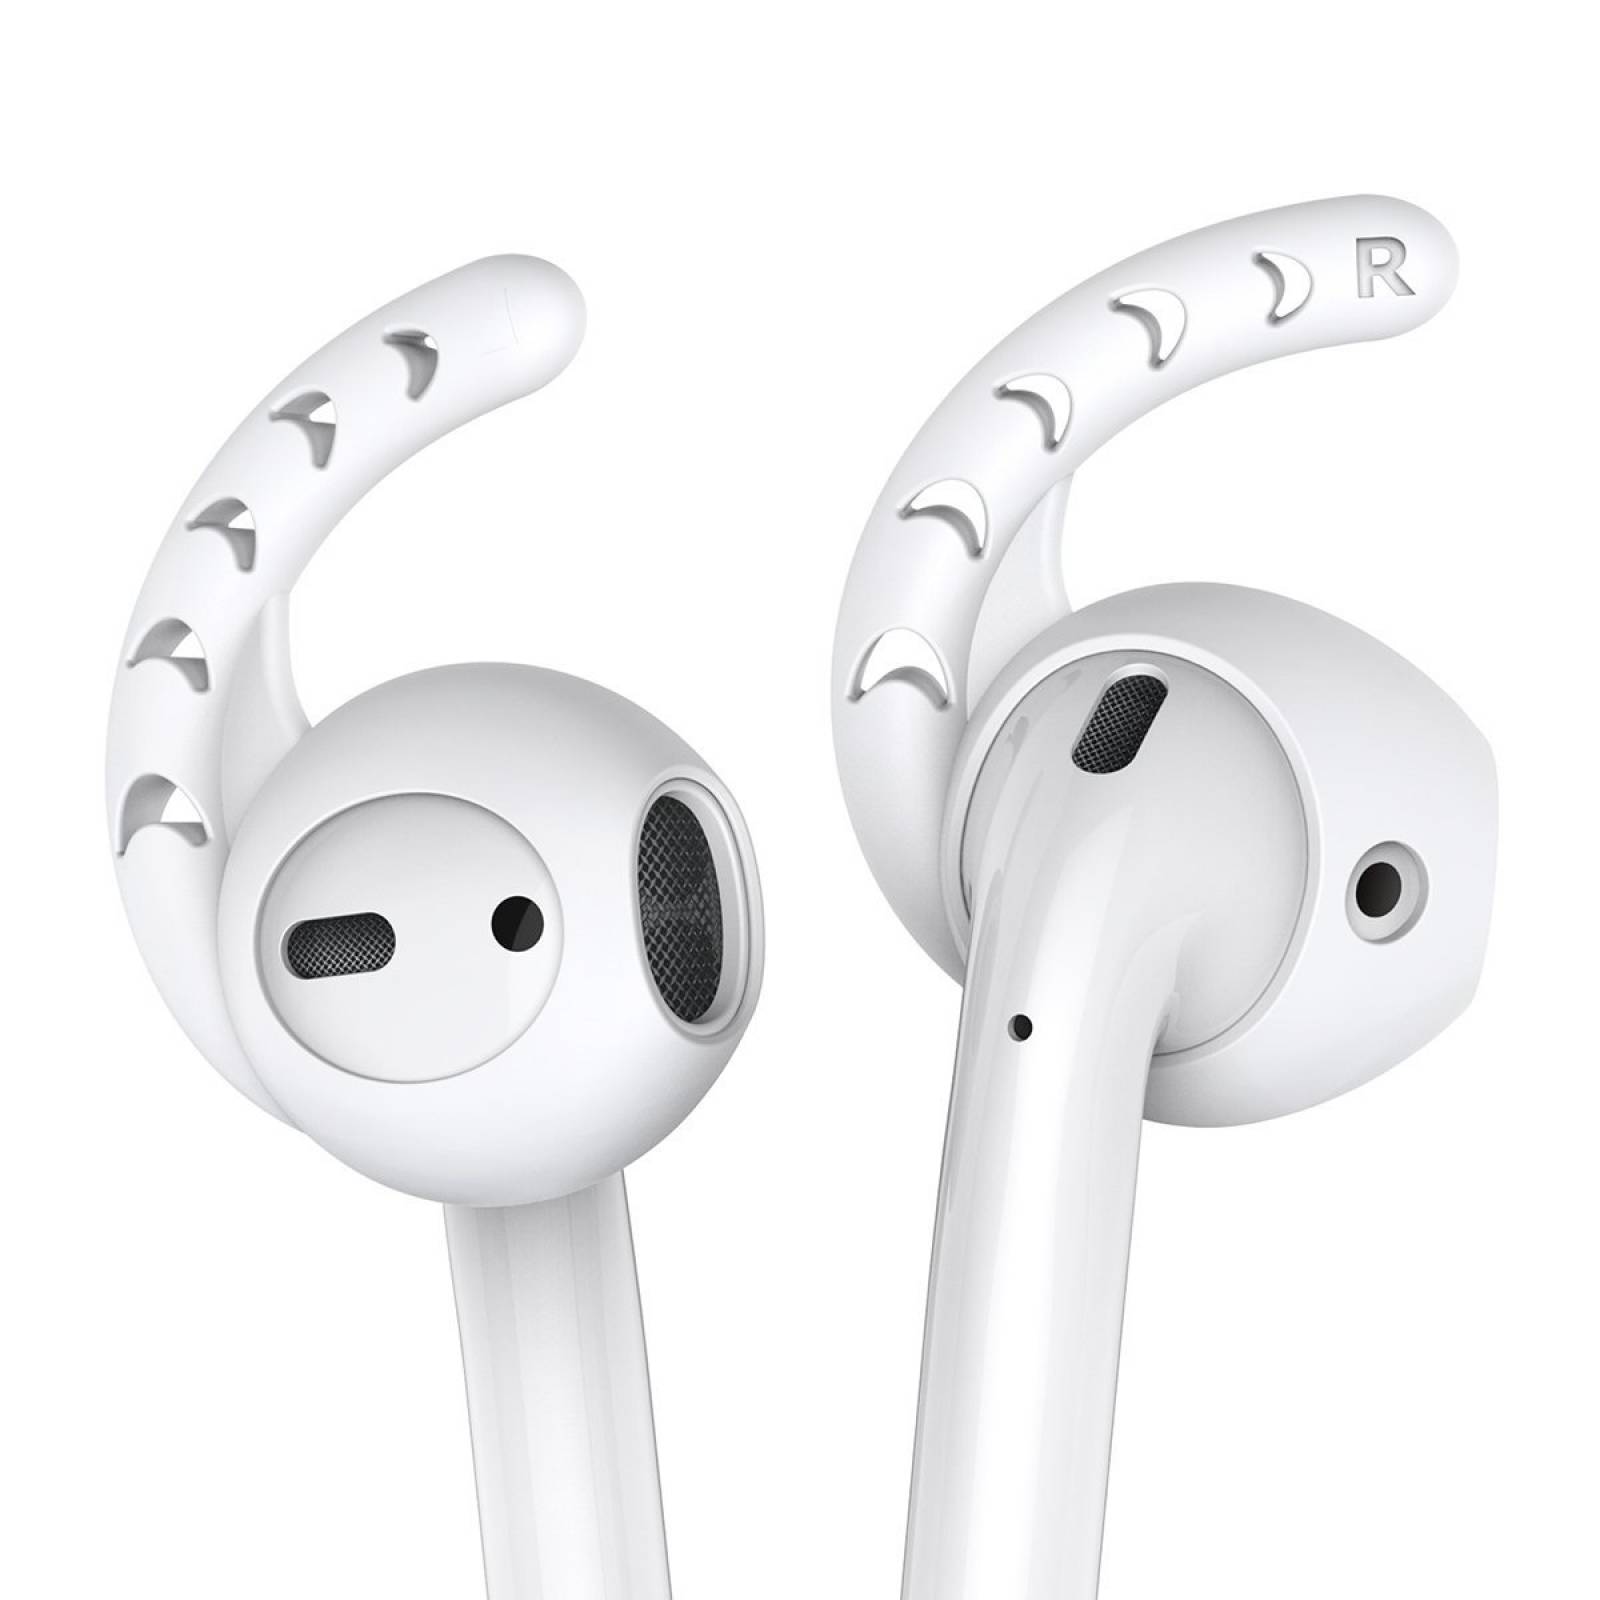 Cubre Audífonos Ahastyle Pt14cr3 Para Apple 3 Pares -blanco